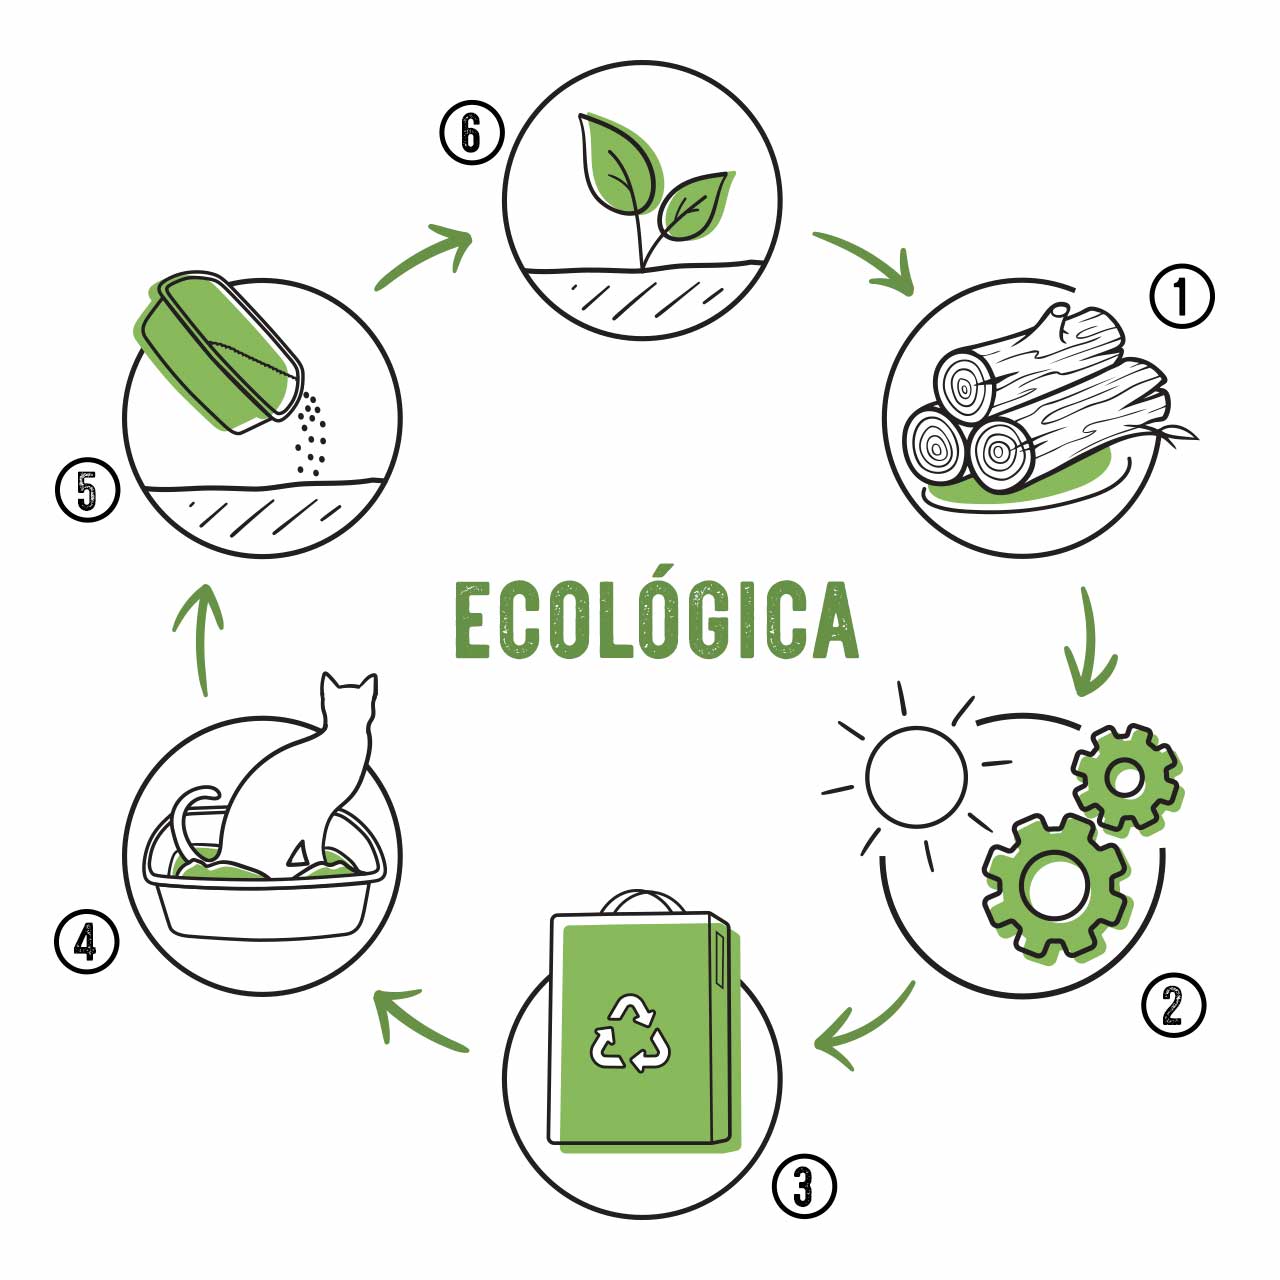 Producto con un ciclo de vida ecológico